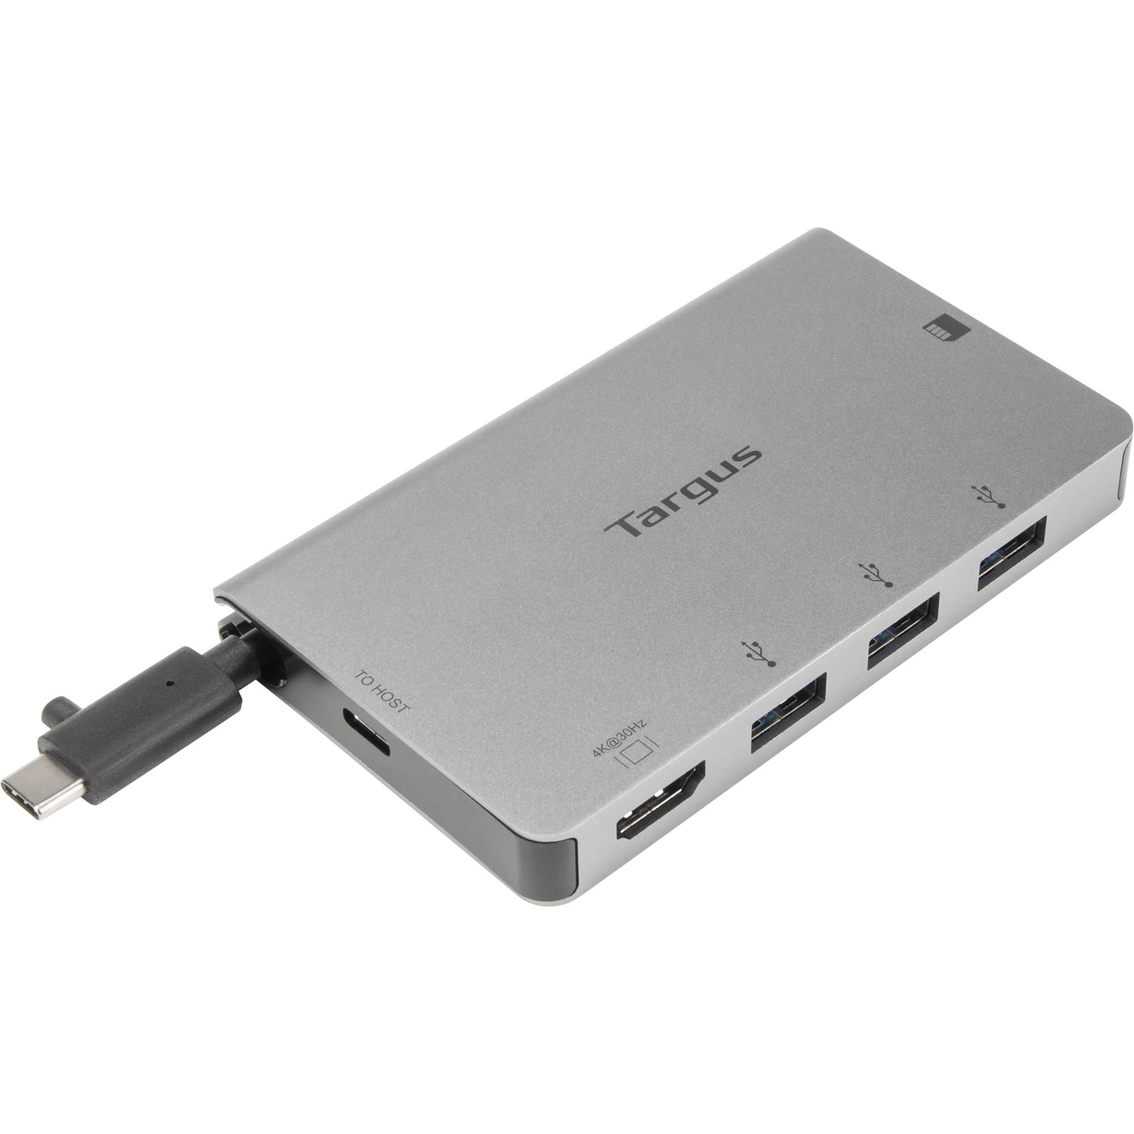 Targus USB C Single Video Multi Port Hub - Image 3 of 7